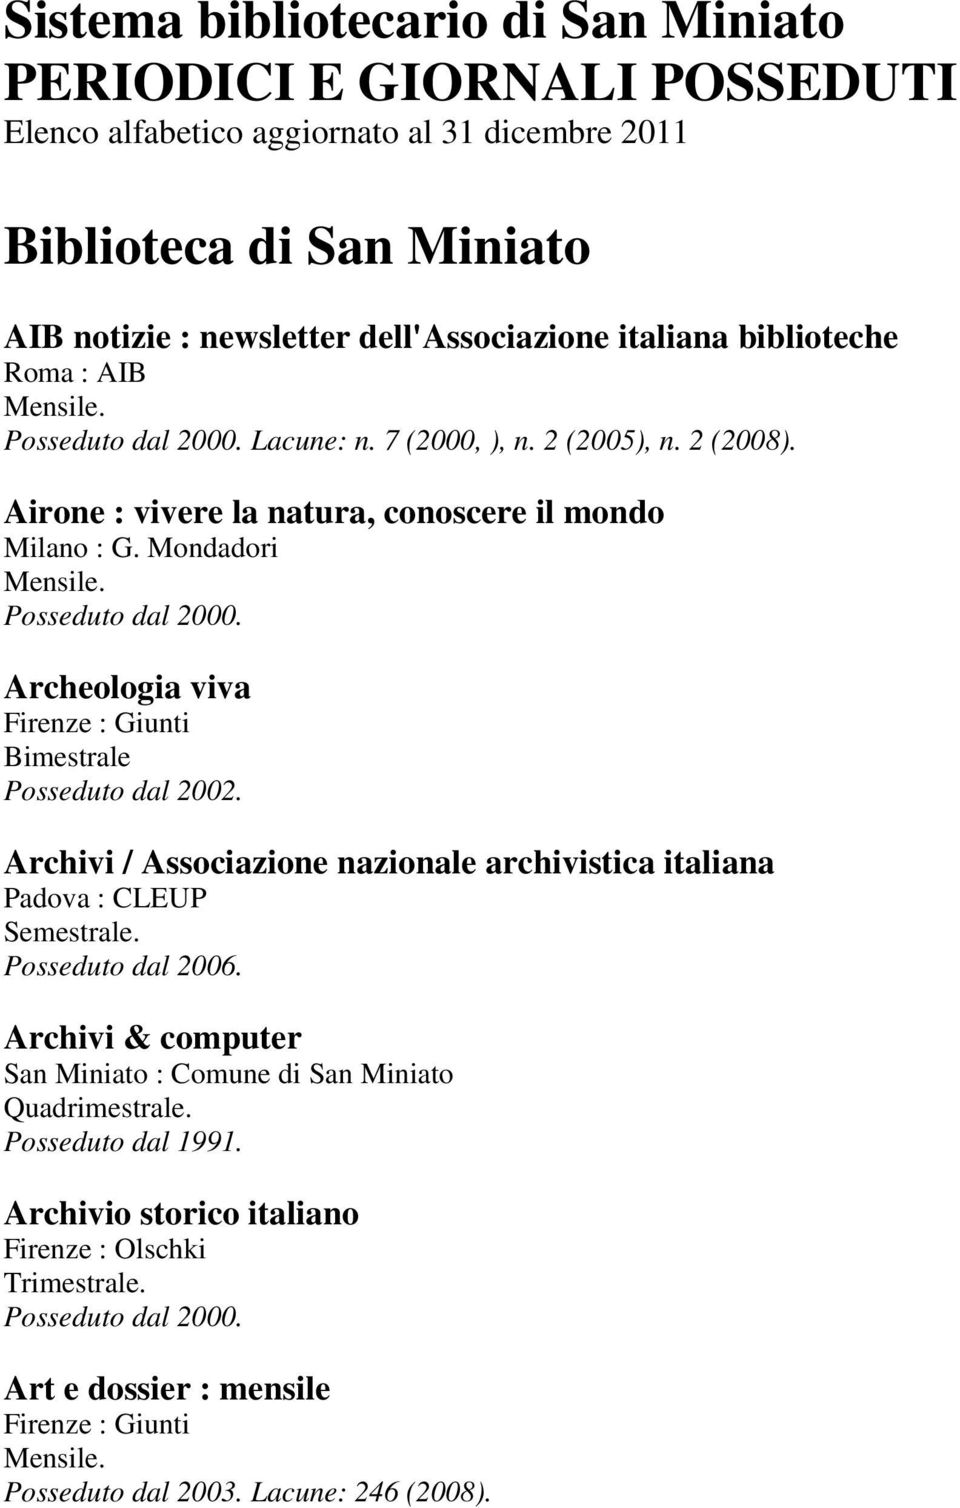 Mondadori Archeologia viva Firenze : Giunti Bimestrale Posseduto dal 2002. Archivi / Associazione nazionale archivistica italiana Padova : CLEUP Semestrale. Posseduto dal 2006.